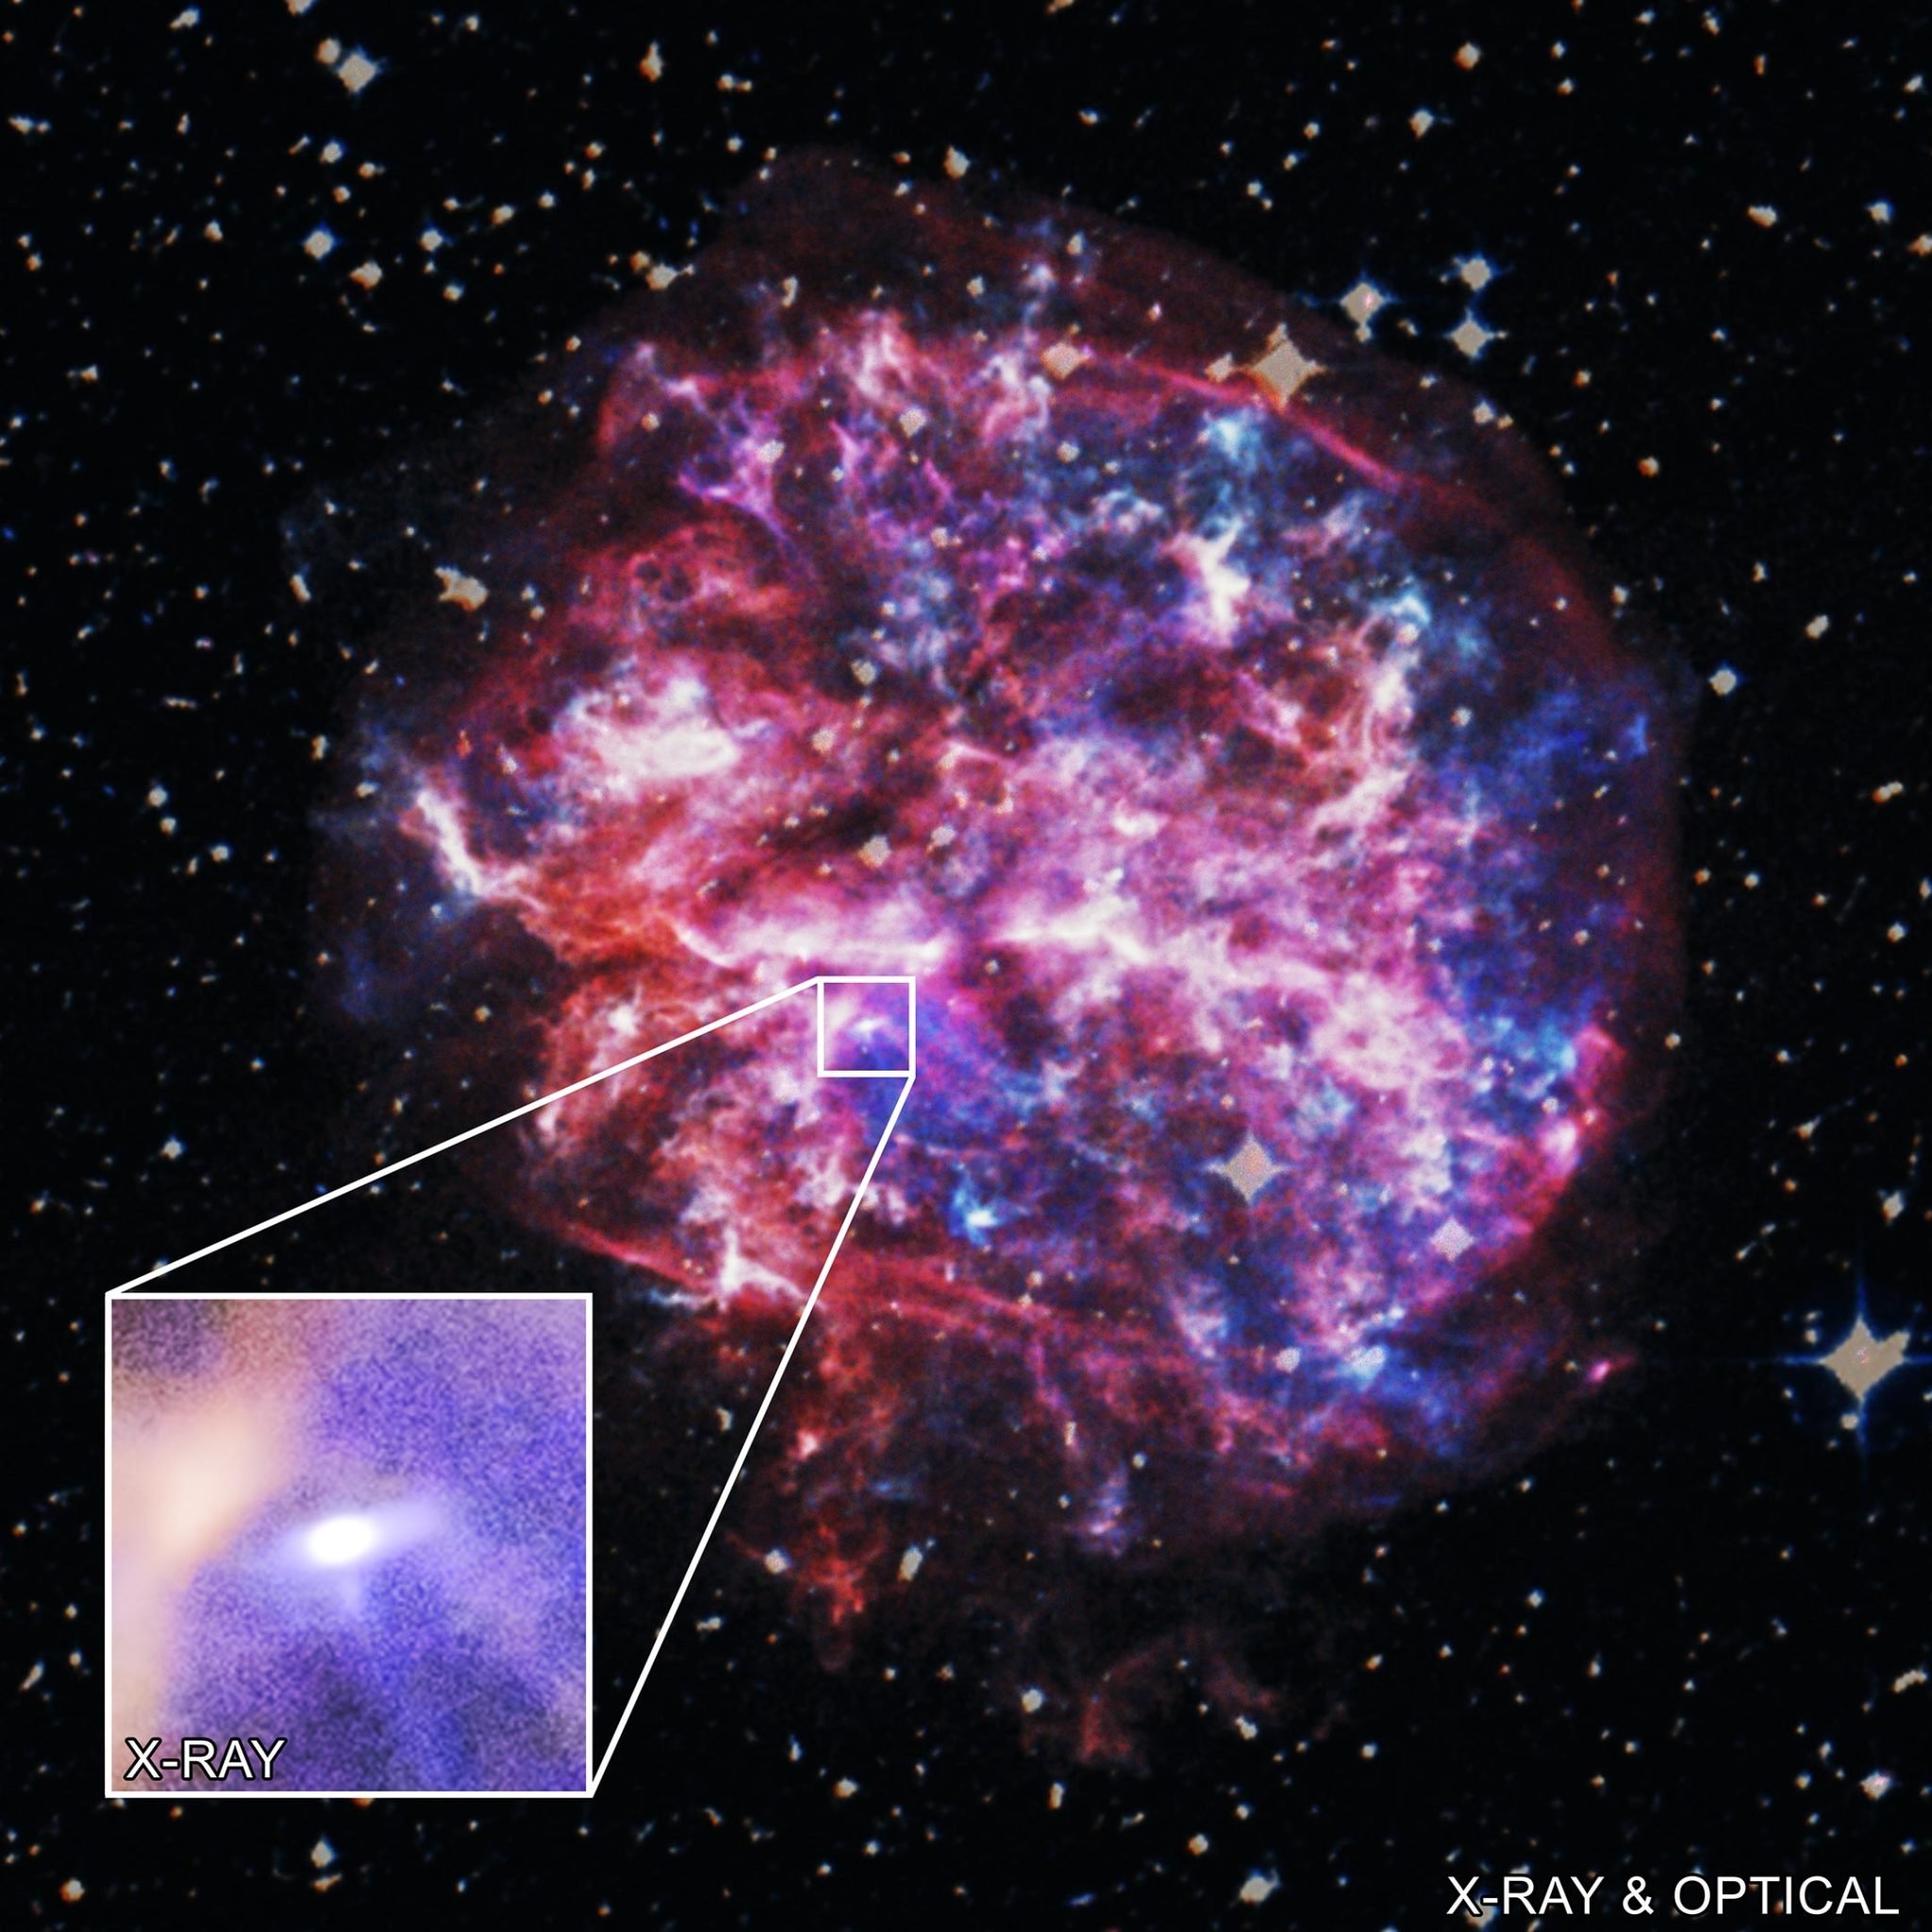 Supernova Remnant G292.0+1.8